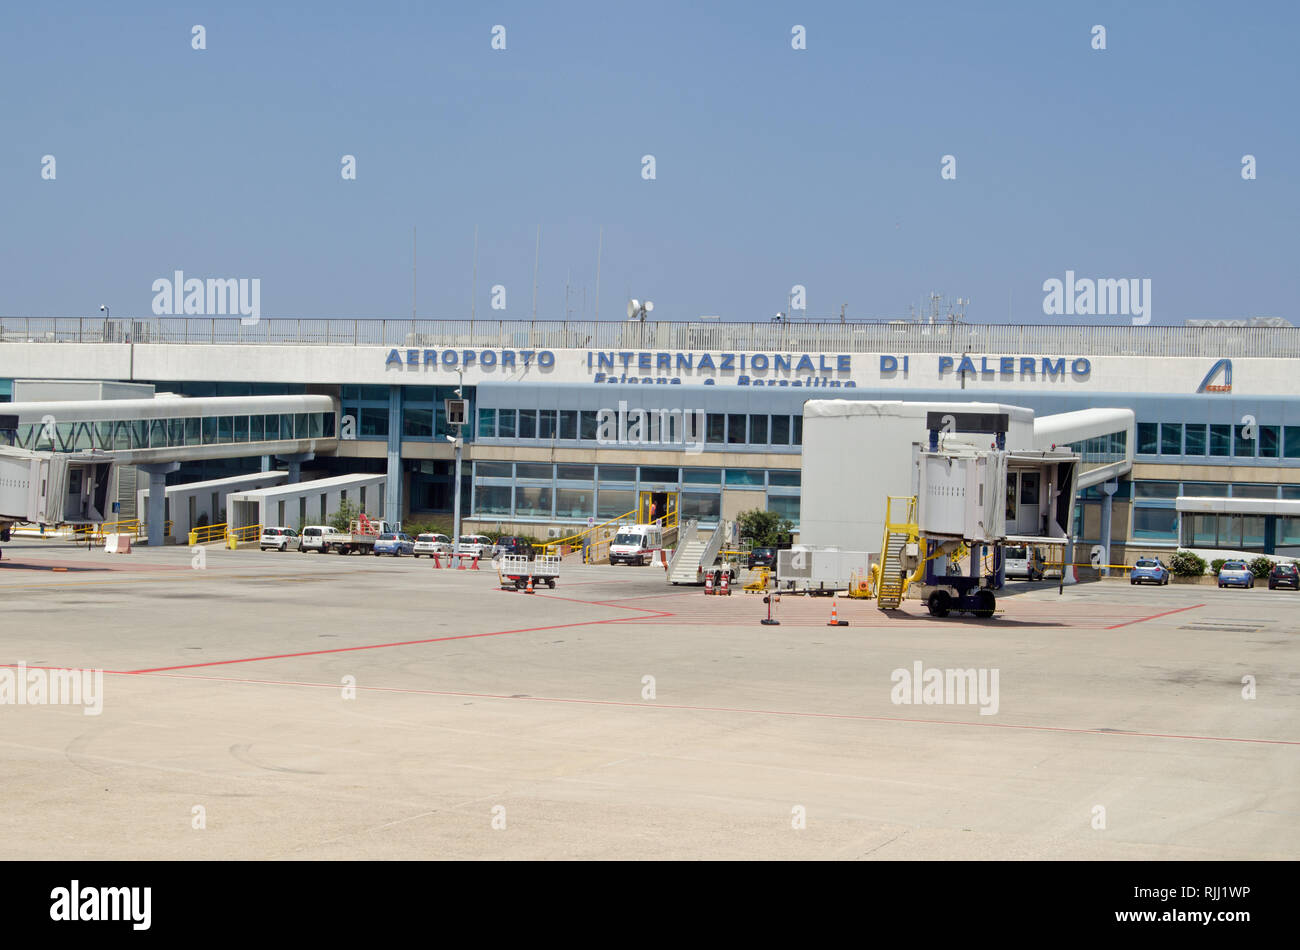 PALERMO, ITALIEN, 21. JUNI 2018: Blick auf das Gebäude des Terminals am Internationalen Flughafen von Palermo, benannt nach dem Anti-mafia-duo Falcone e Borsellino. Stockfoto